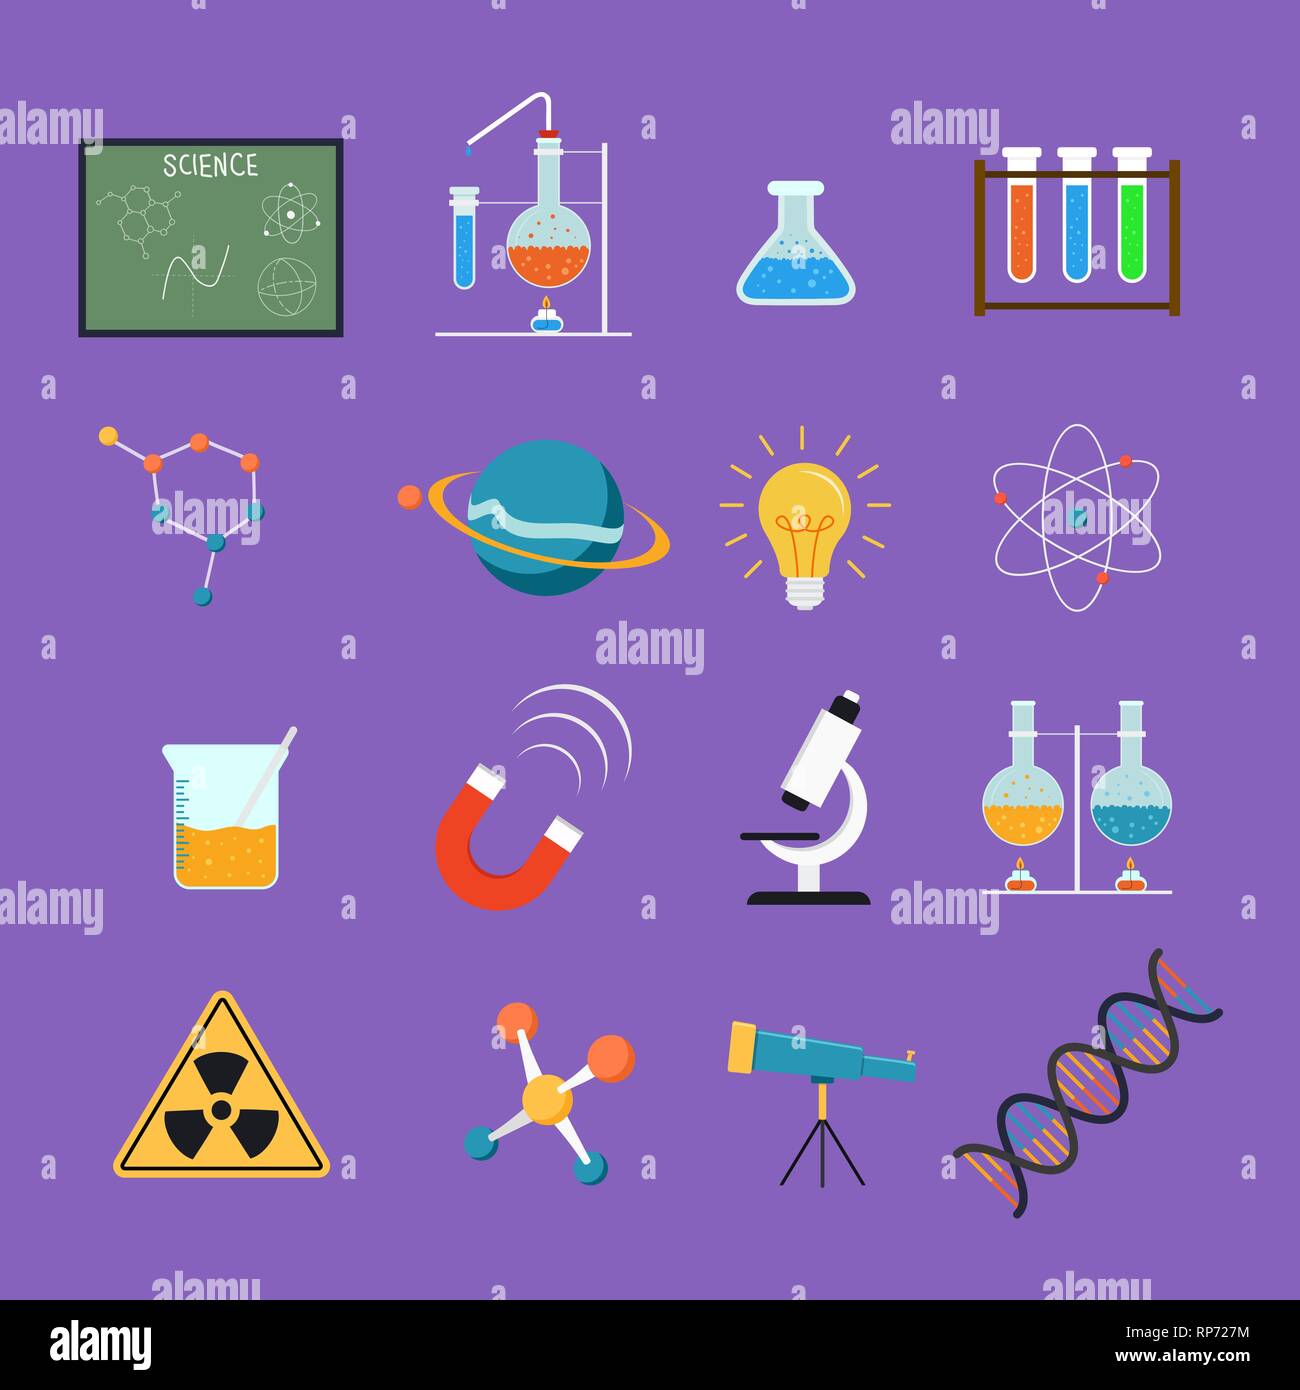 La science colorés icon set, l'éducation et de la recherche conception collection. Inclut des outils scientifiques, microscope, chimie de laboratoire et de recherche, ballon Illustration de Vecteur